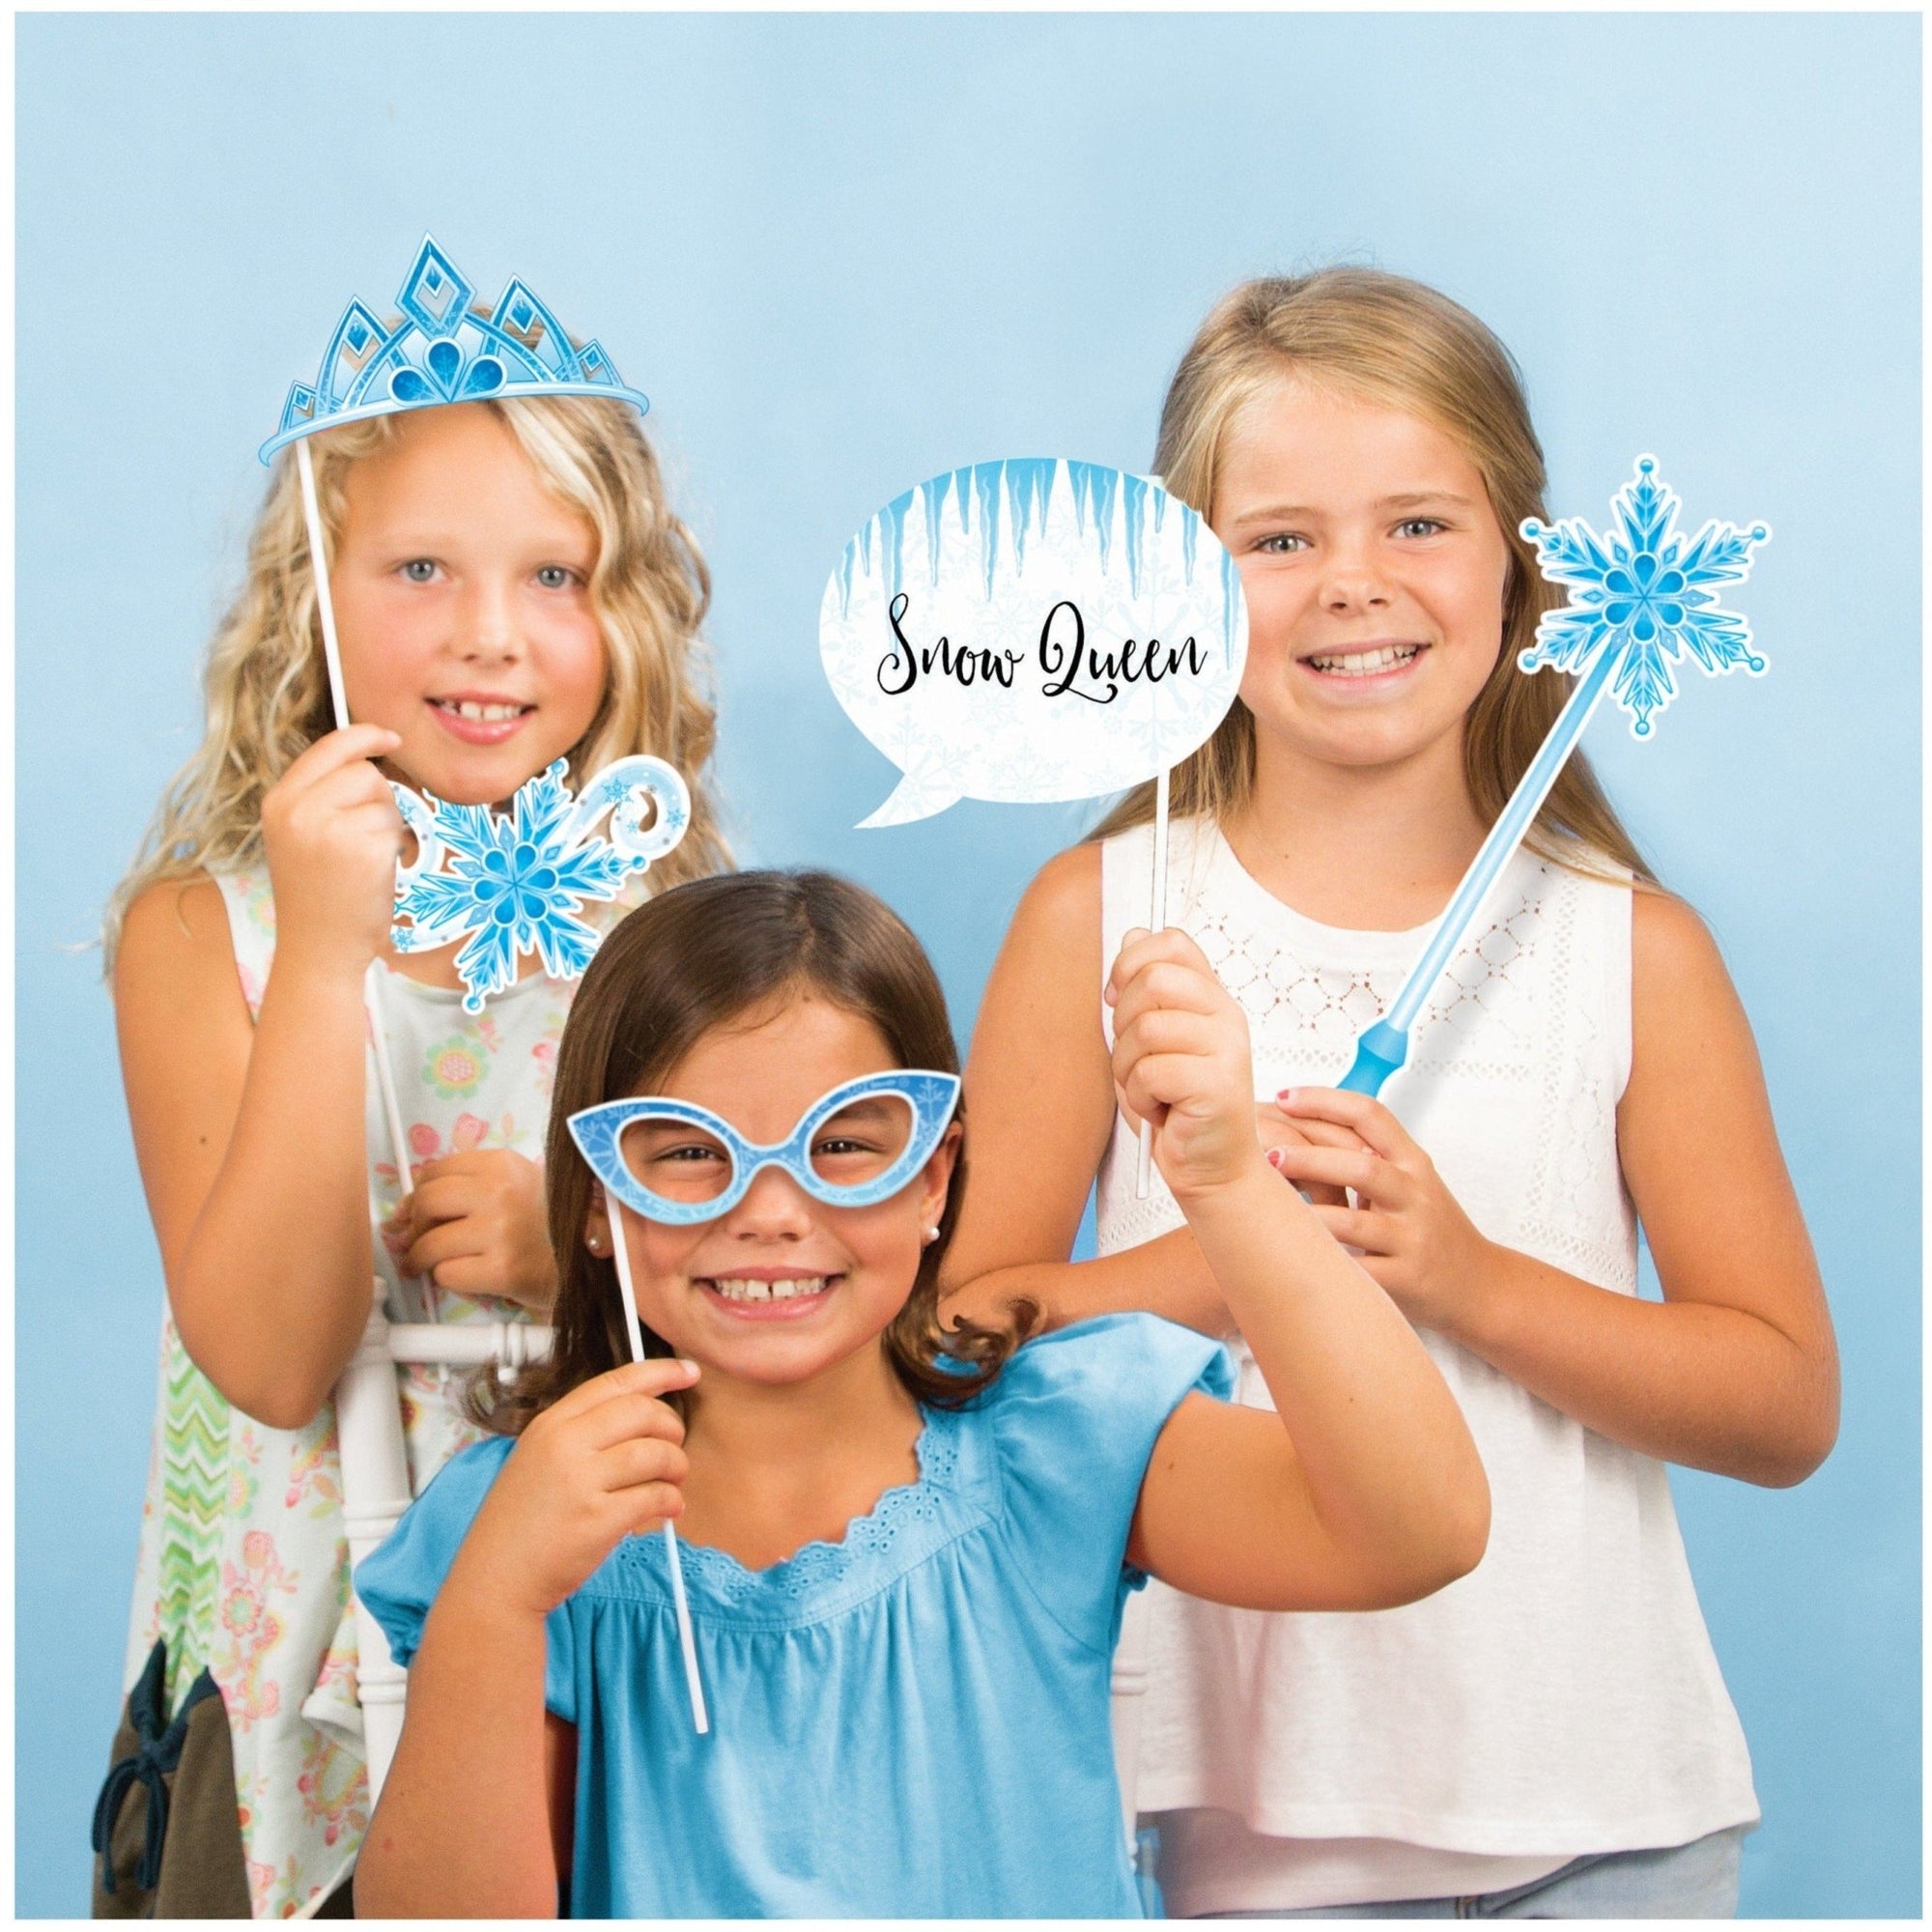 Princess Snowflake Party Photo Props - Stesha Party